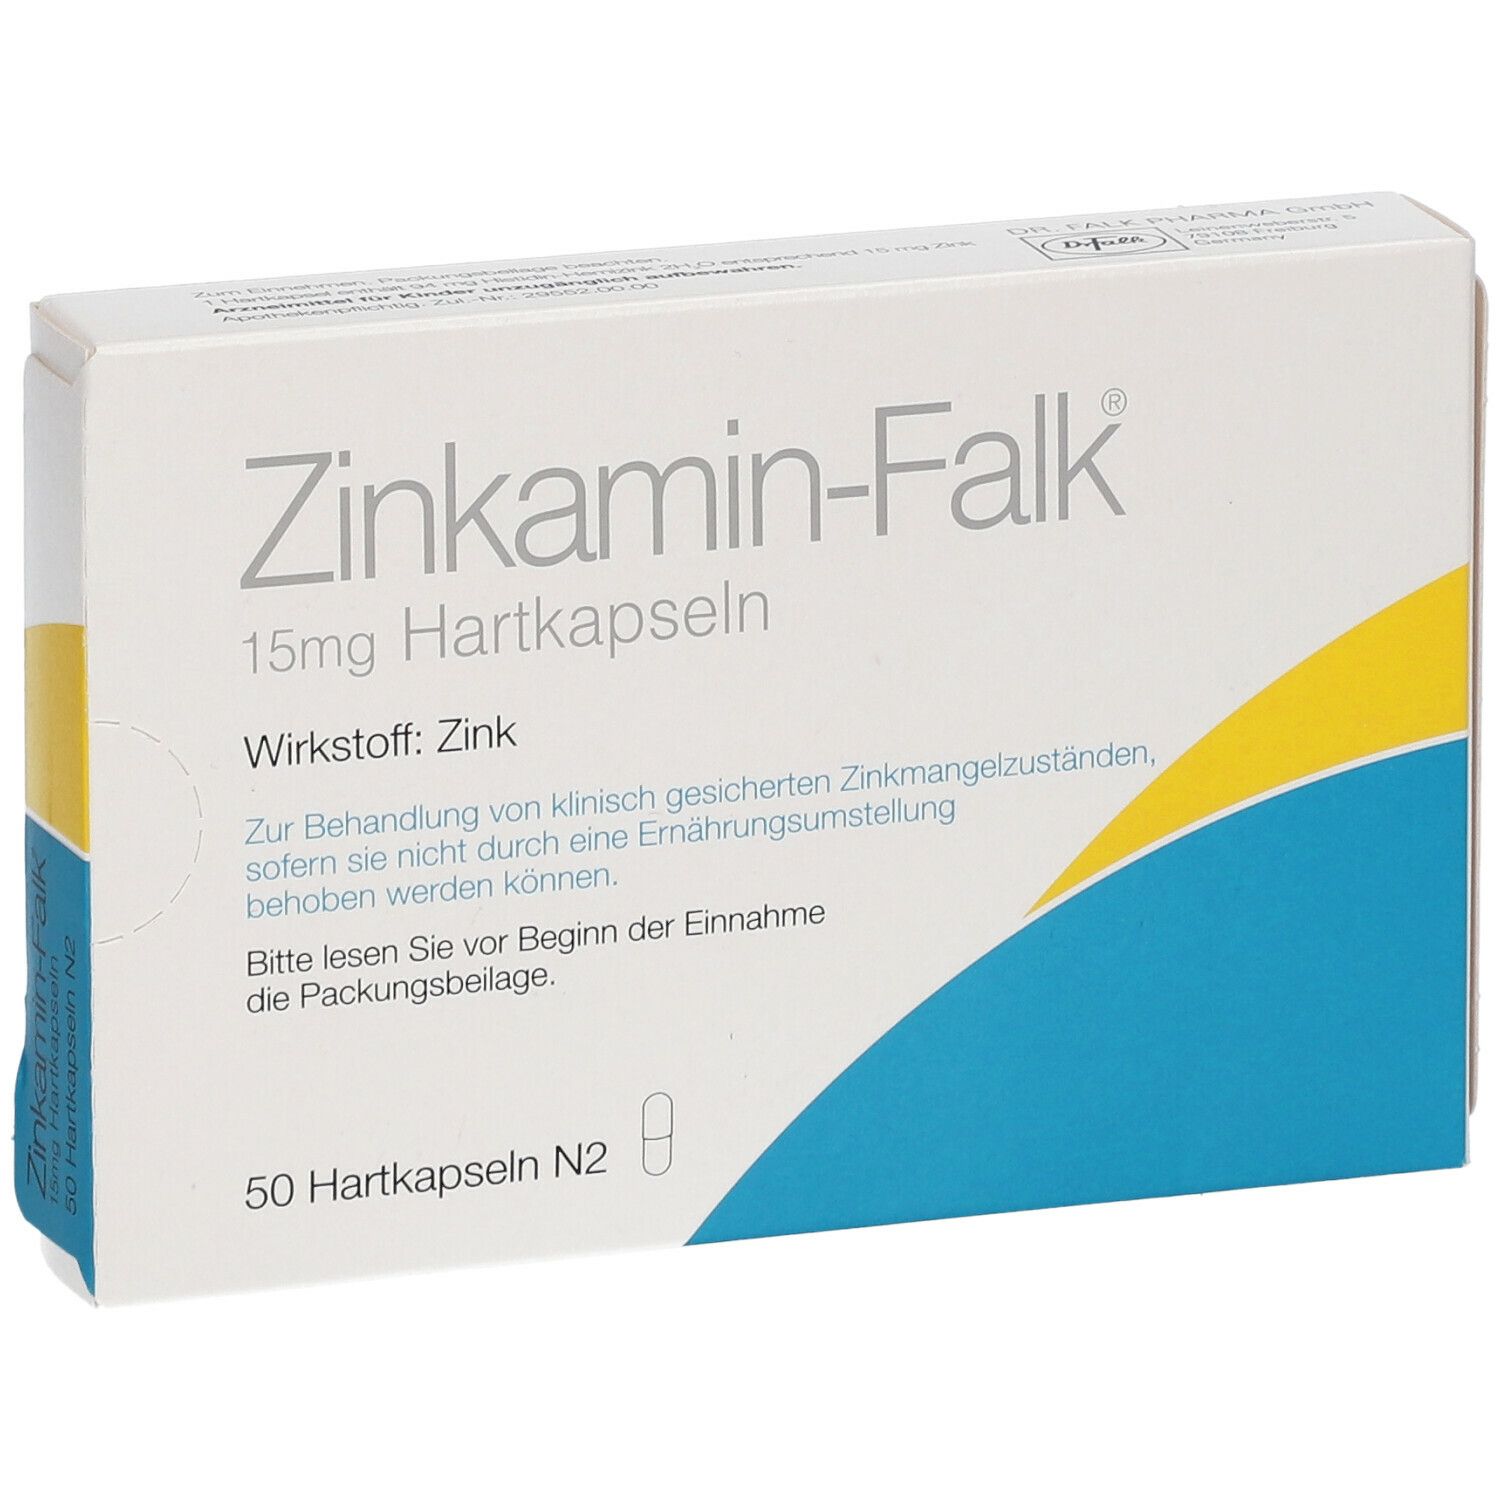 Zinkamin-Falk®